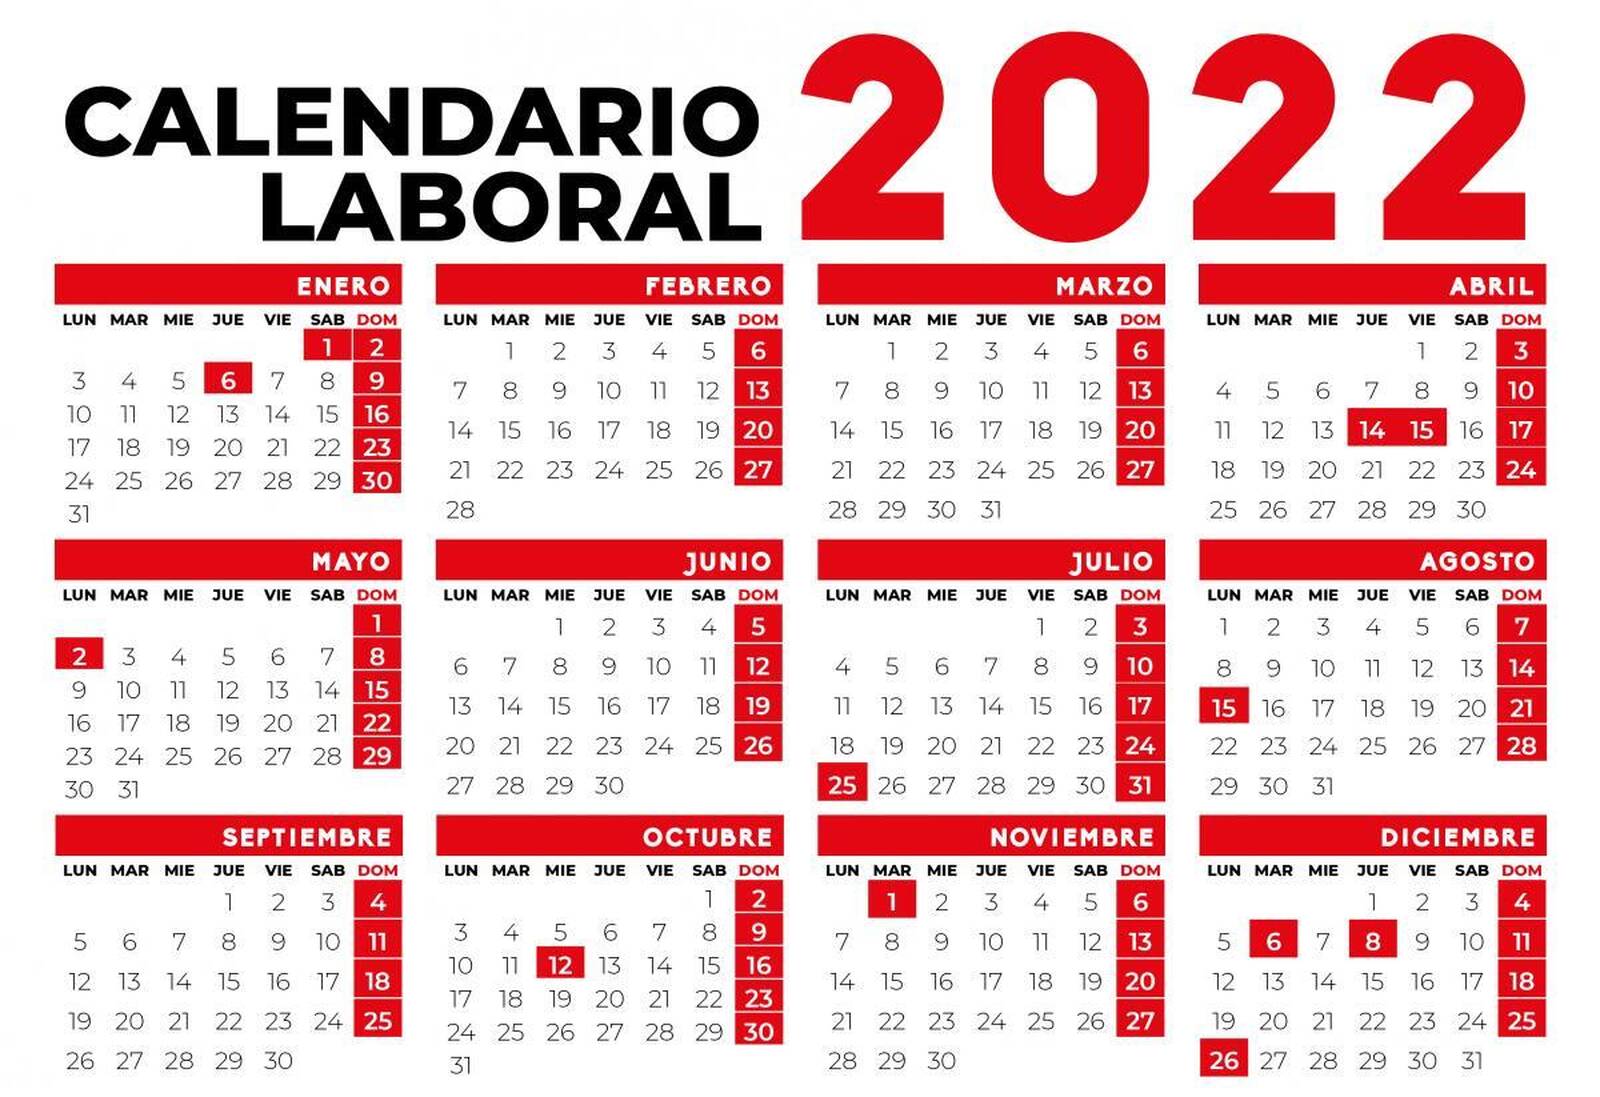 Calendario Laboral de la Comunidad de Madrid 2022: doce festivos, incluidos el 25 de julio y el 26 de diciembre